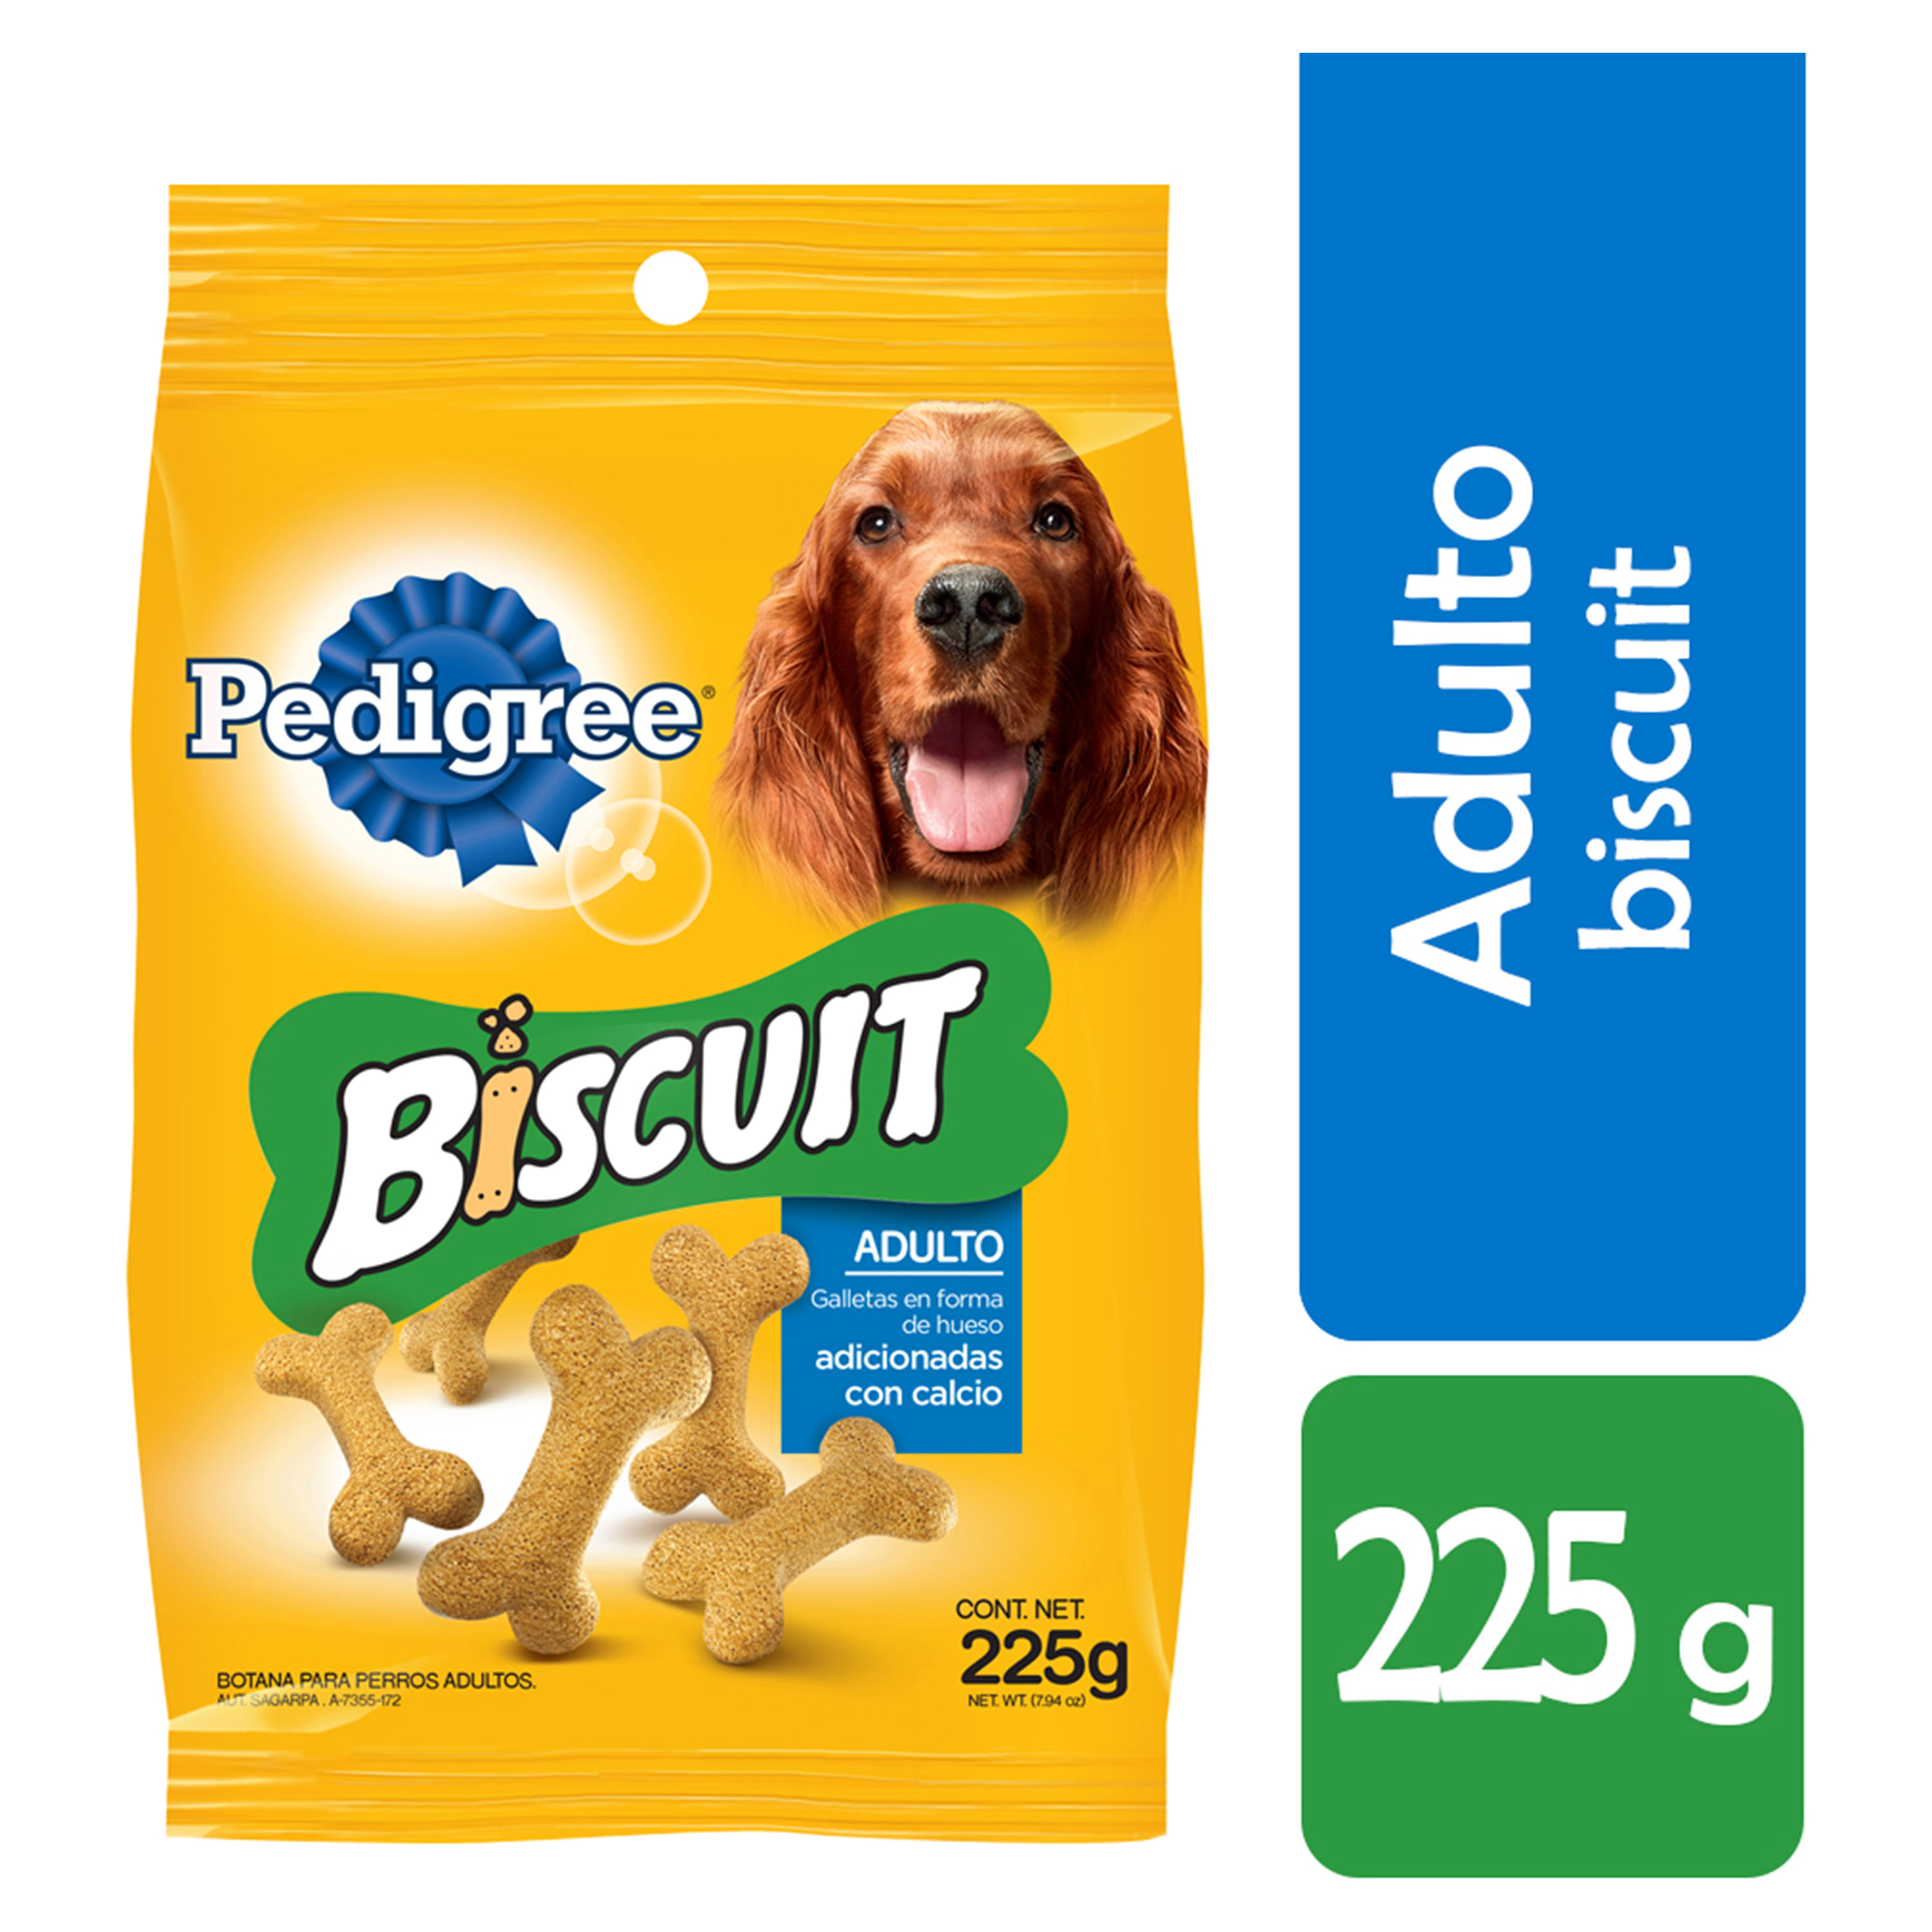 Biscuit-Pedigree-Snack-225gr-1-6771